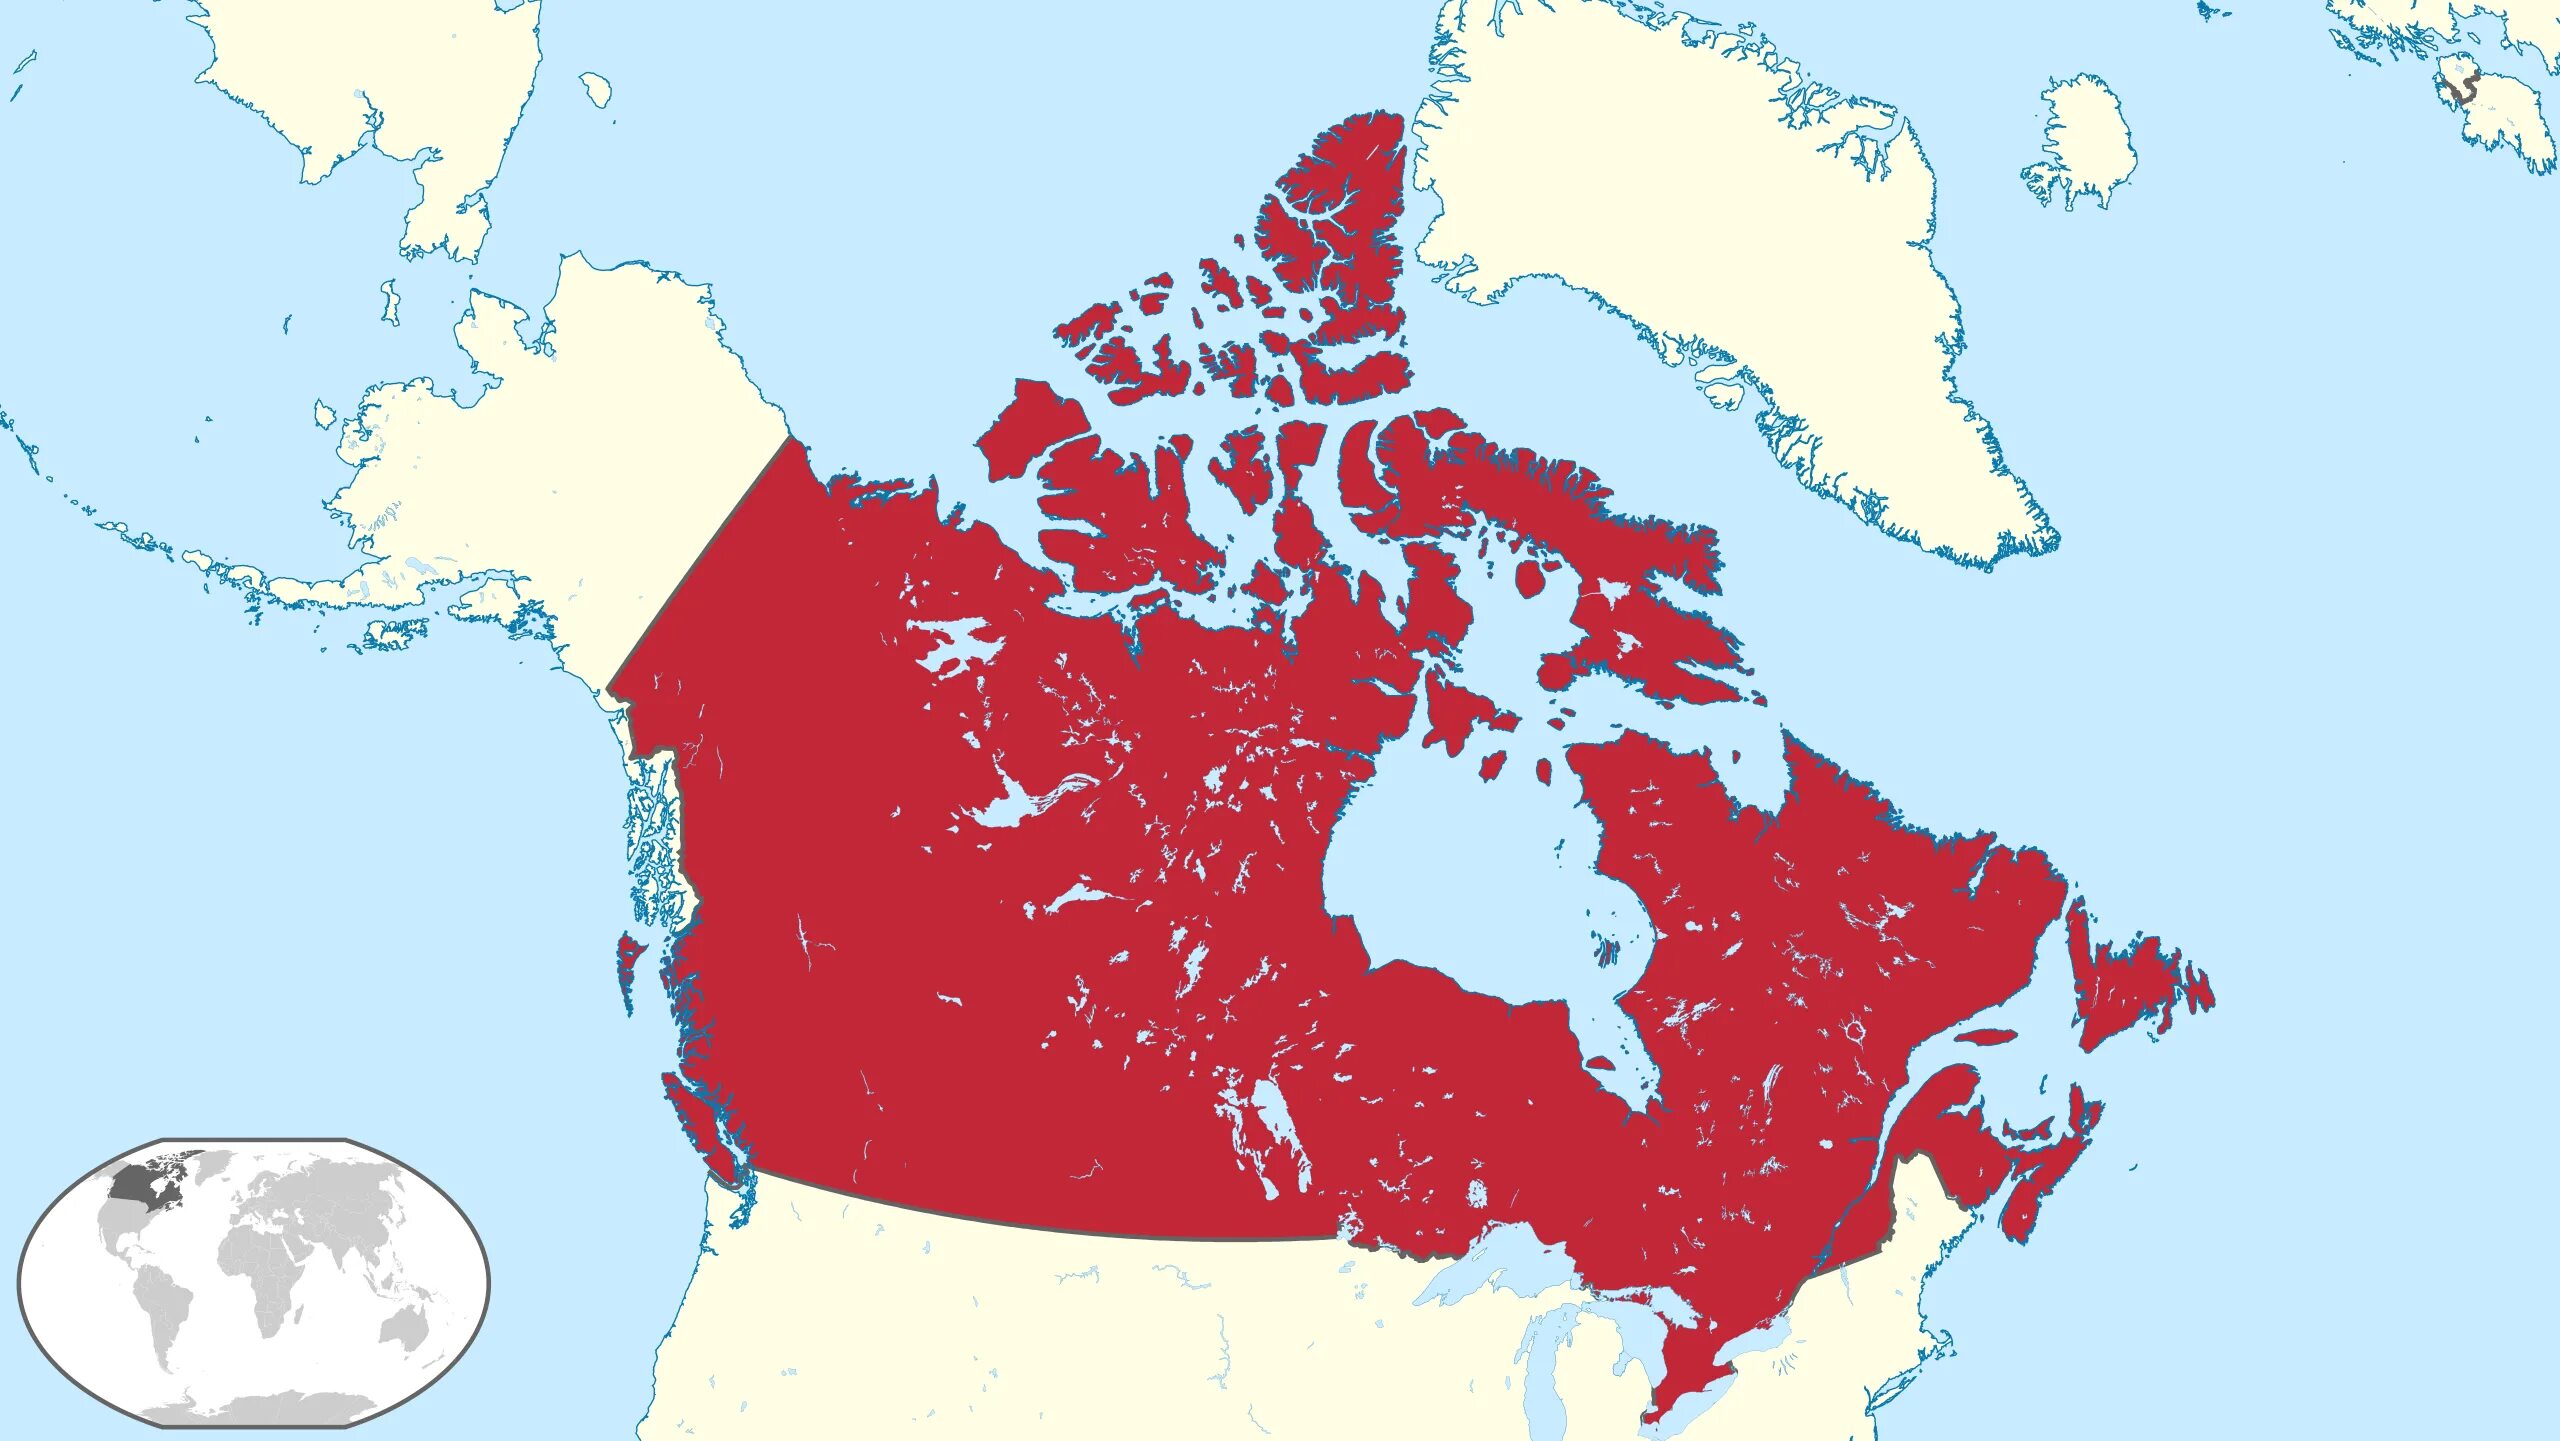 Area territory. Канада на карте. Размер территории Канады. Карта Канады 20 век.